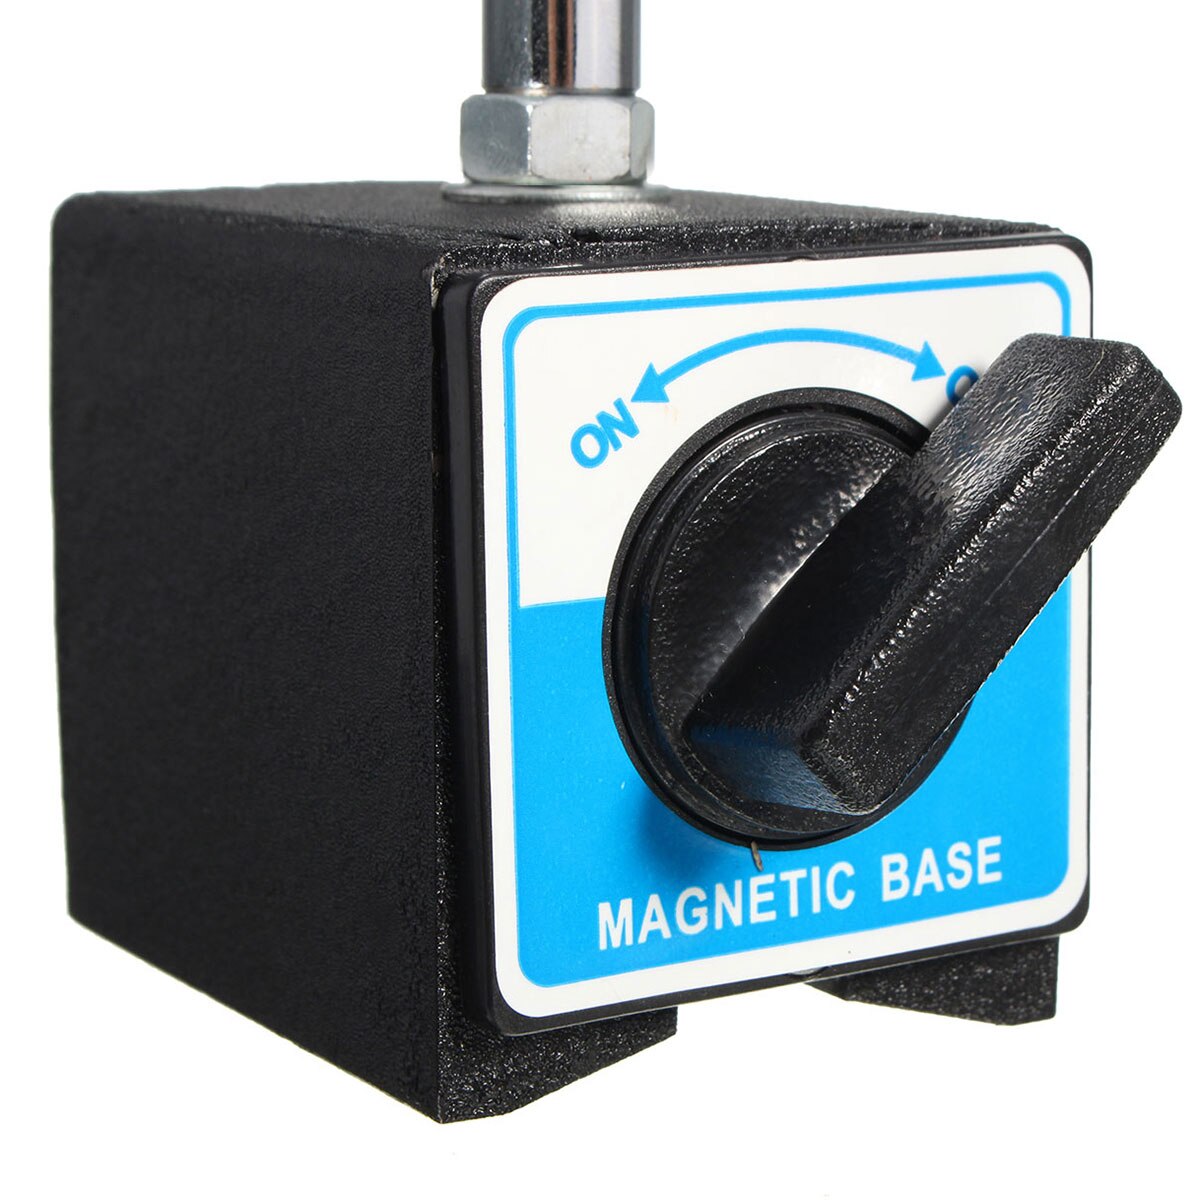 Universel magnetisk base holder dial test indikator gauge fleksibel magnetisk stativ tabel skala præcision indikatorer måling